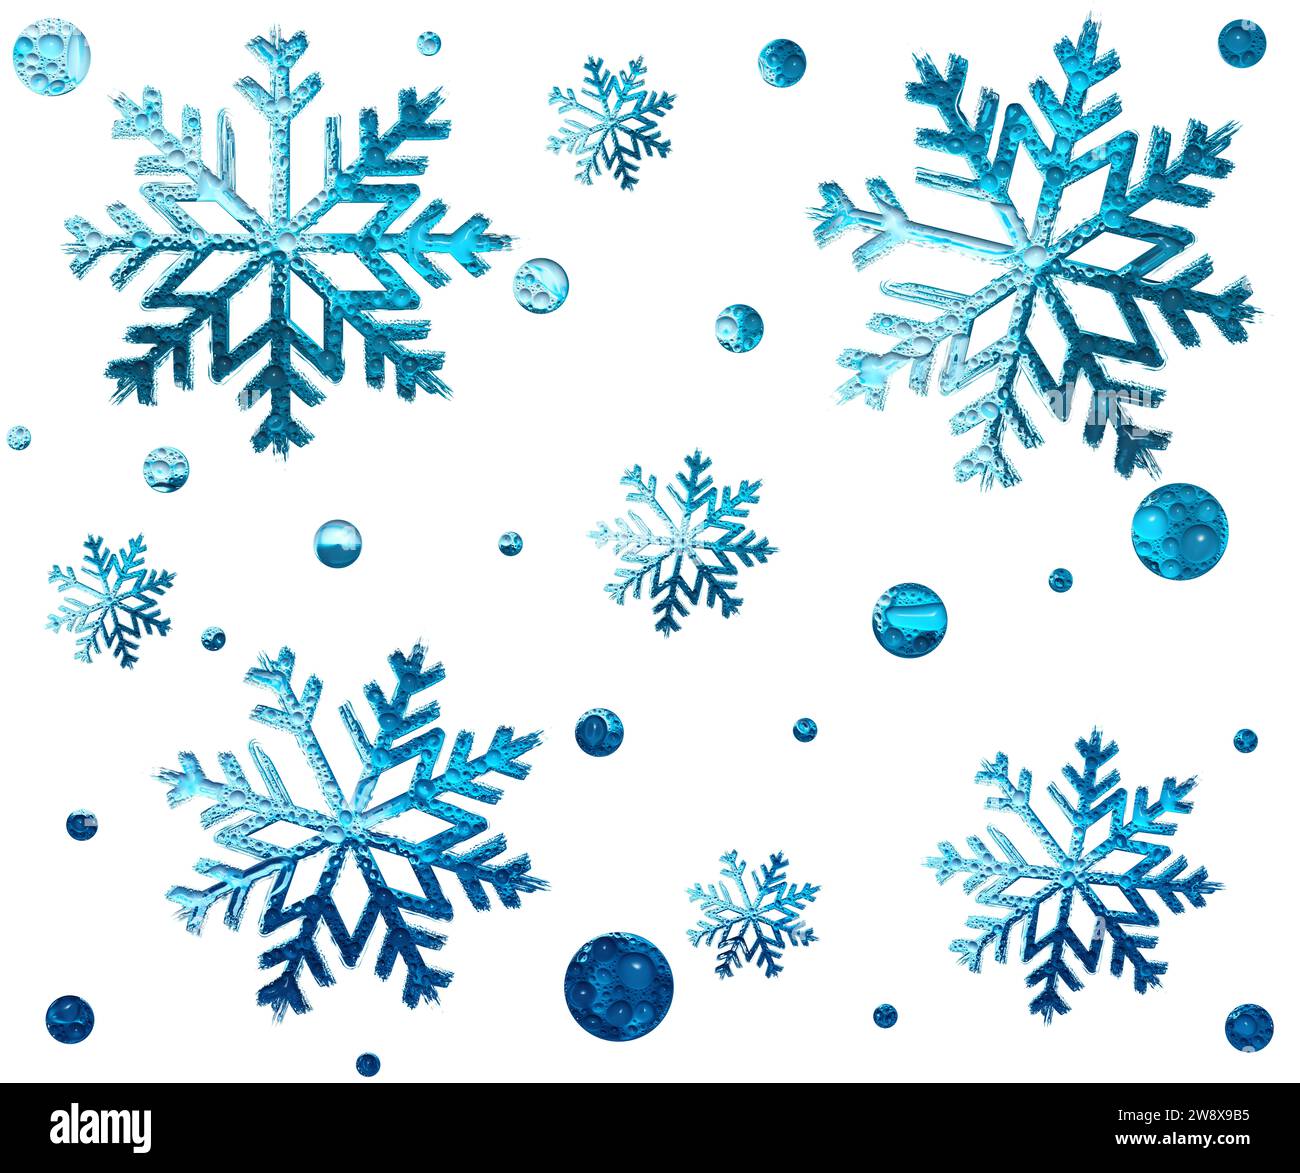 illustration de flocons de neige bleu vif avec des gouttes d'eau Banque D'Images